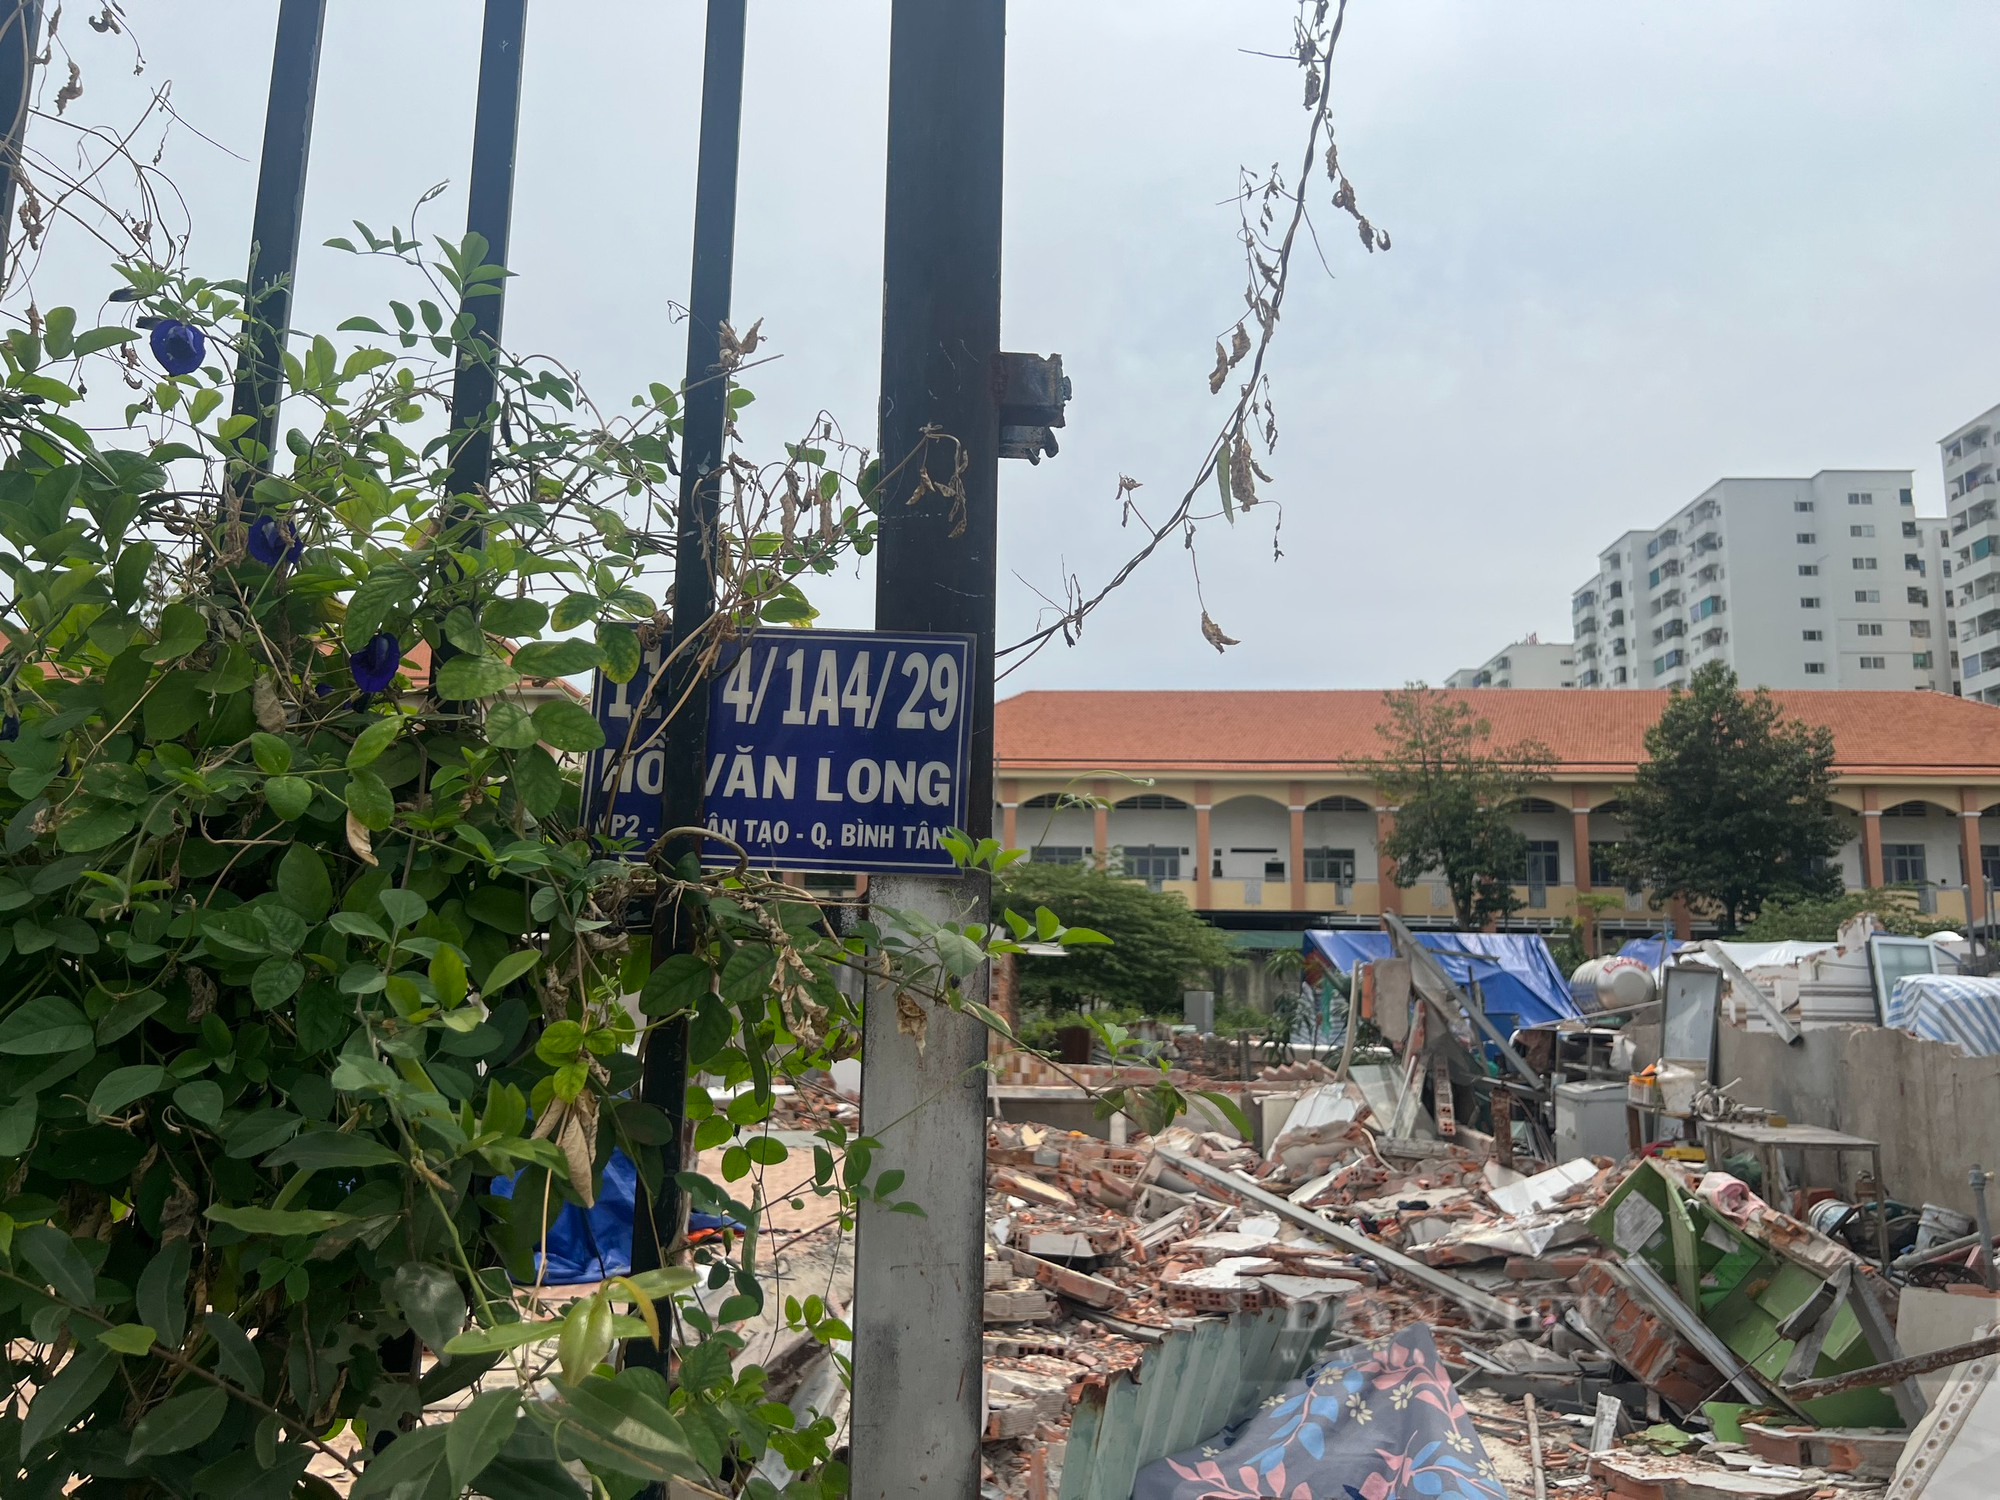 Chưa thể tháo dỡ gần 100 ngôi nhà xây trái phép trên đất nông nghiệp ở quận Bình Tân, TP.HCM vì sao? - Ảnh 1.